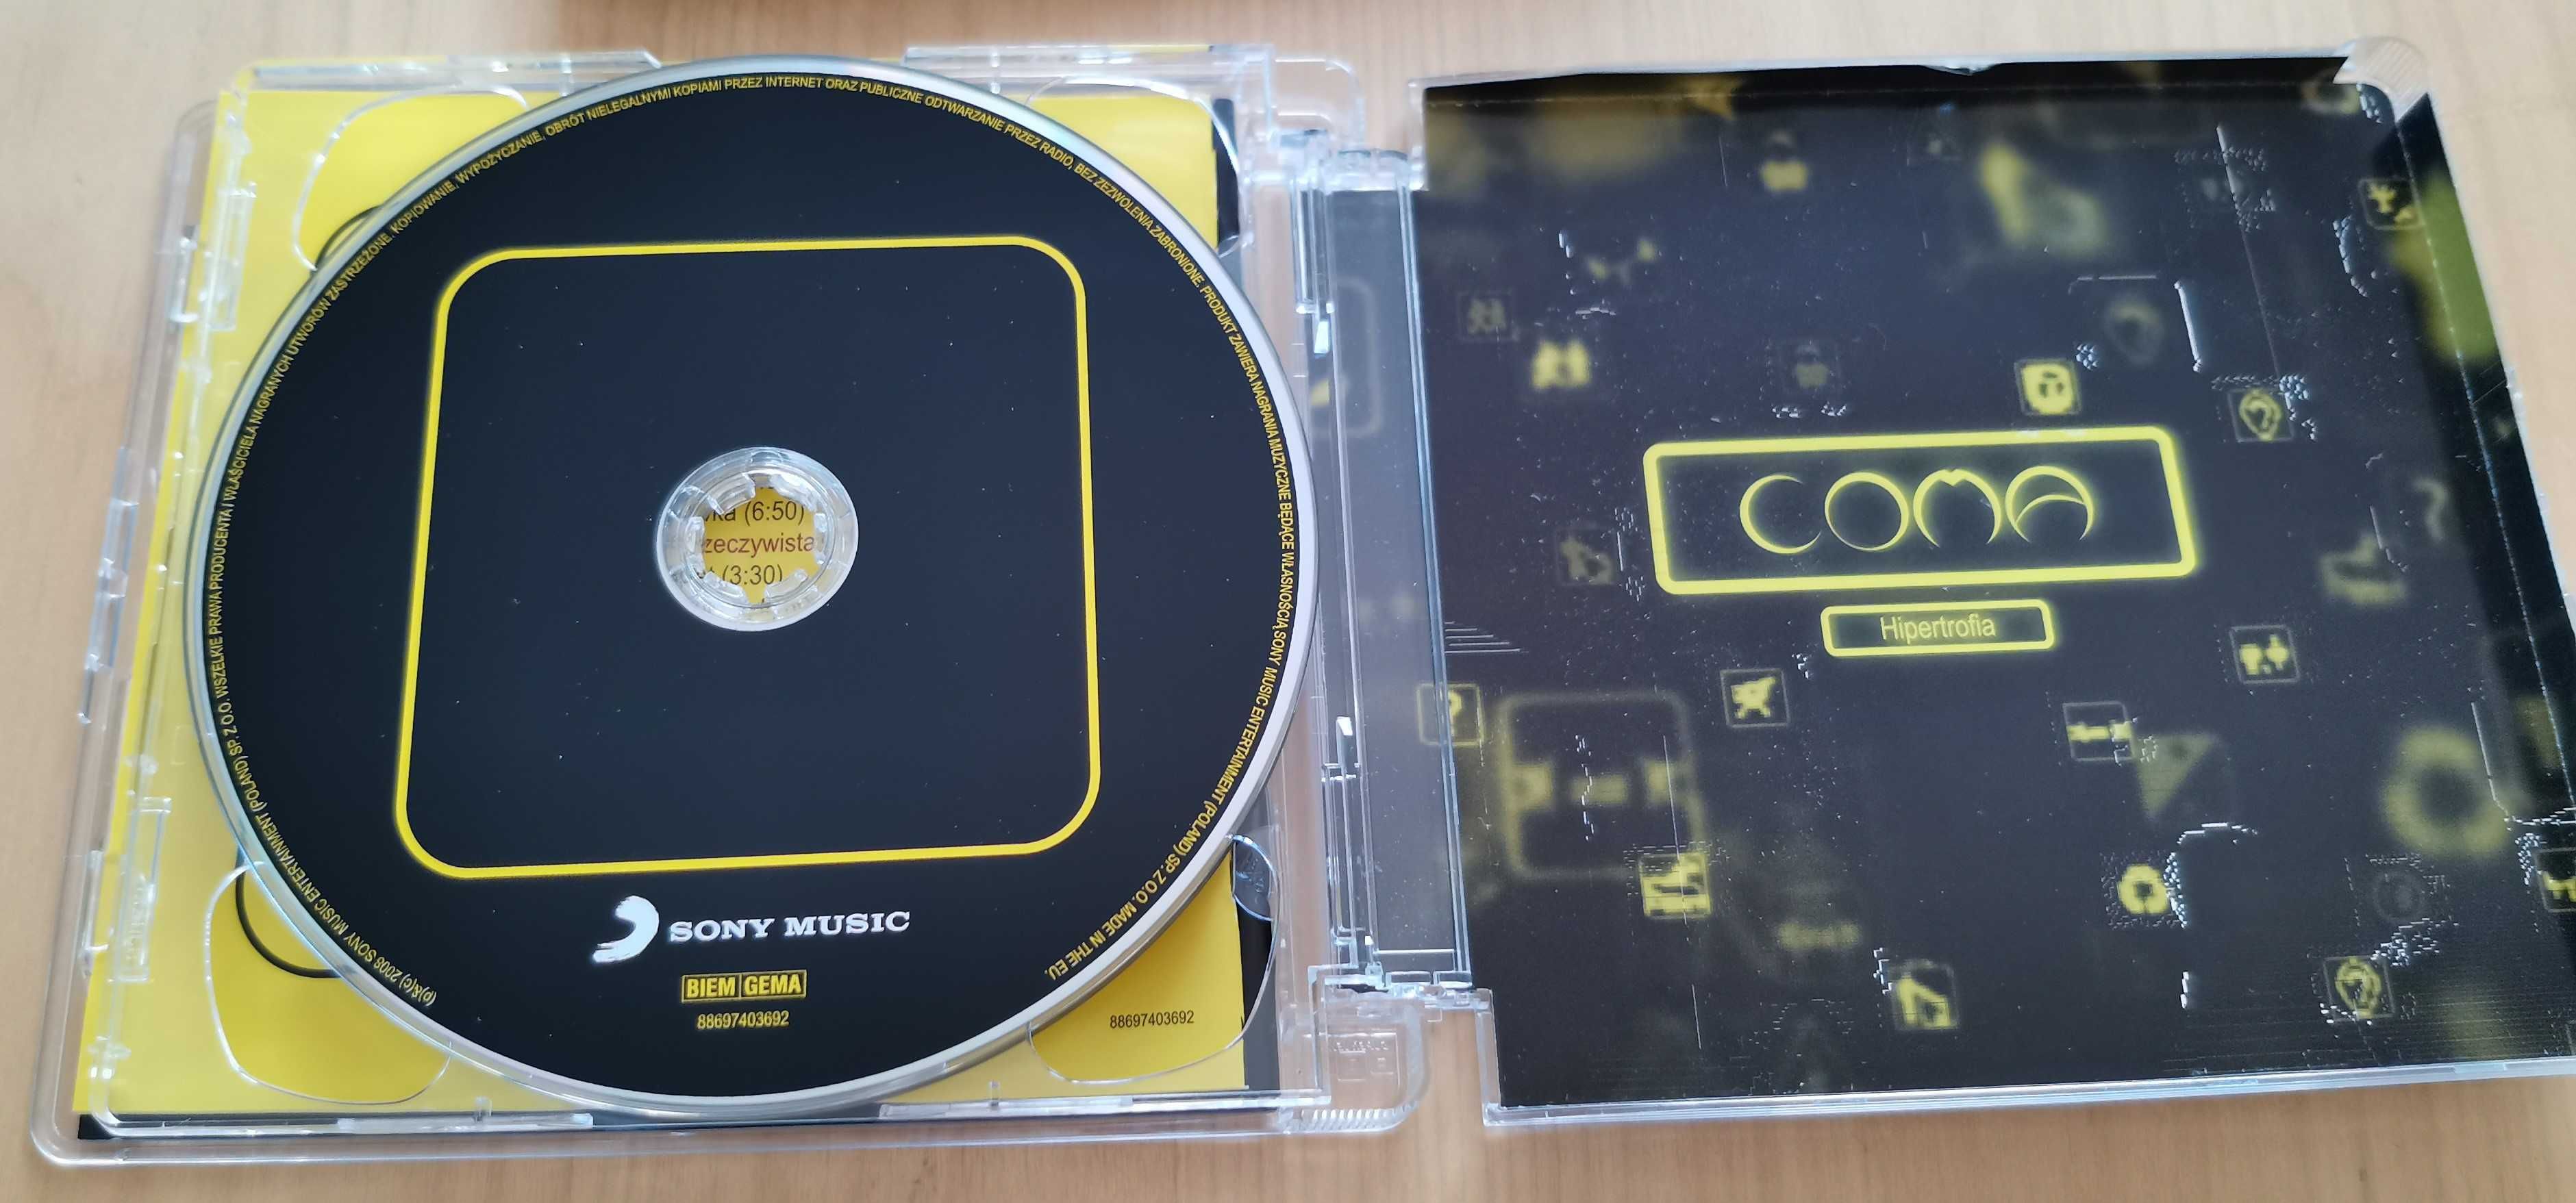 Coma - Hipertrofia 2CD # płyta CD # wyd. 2008